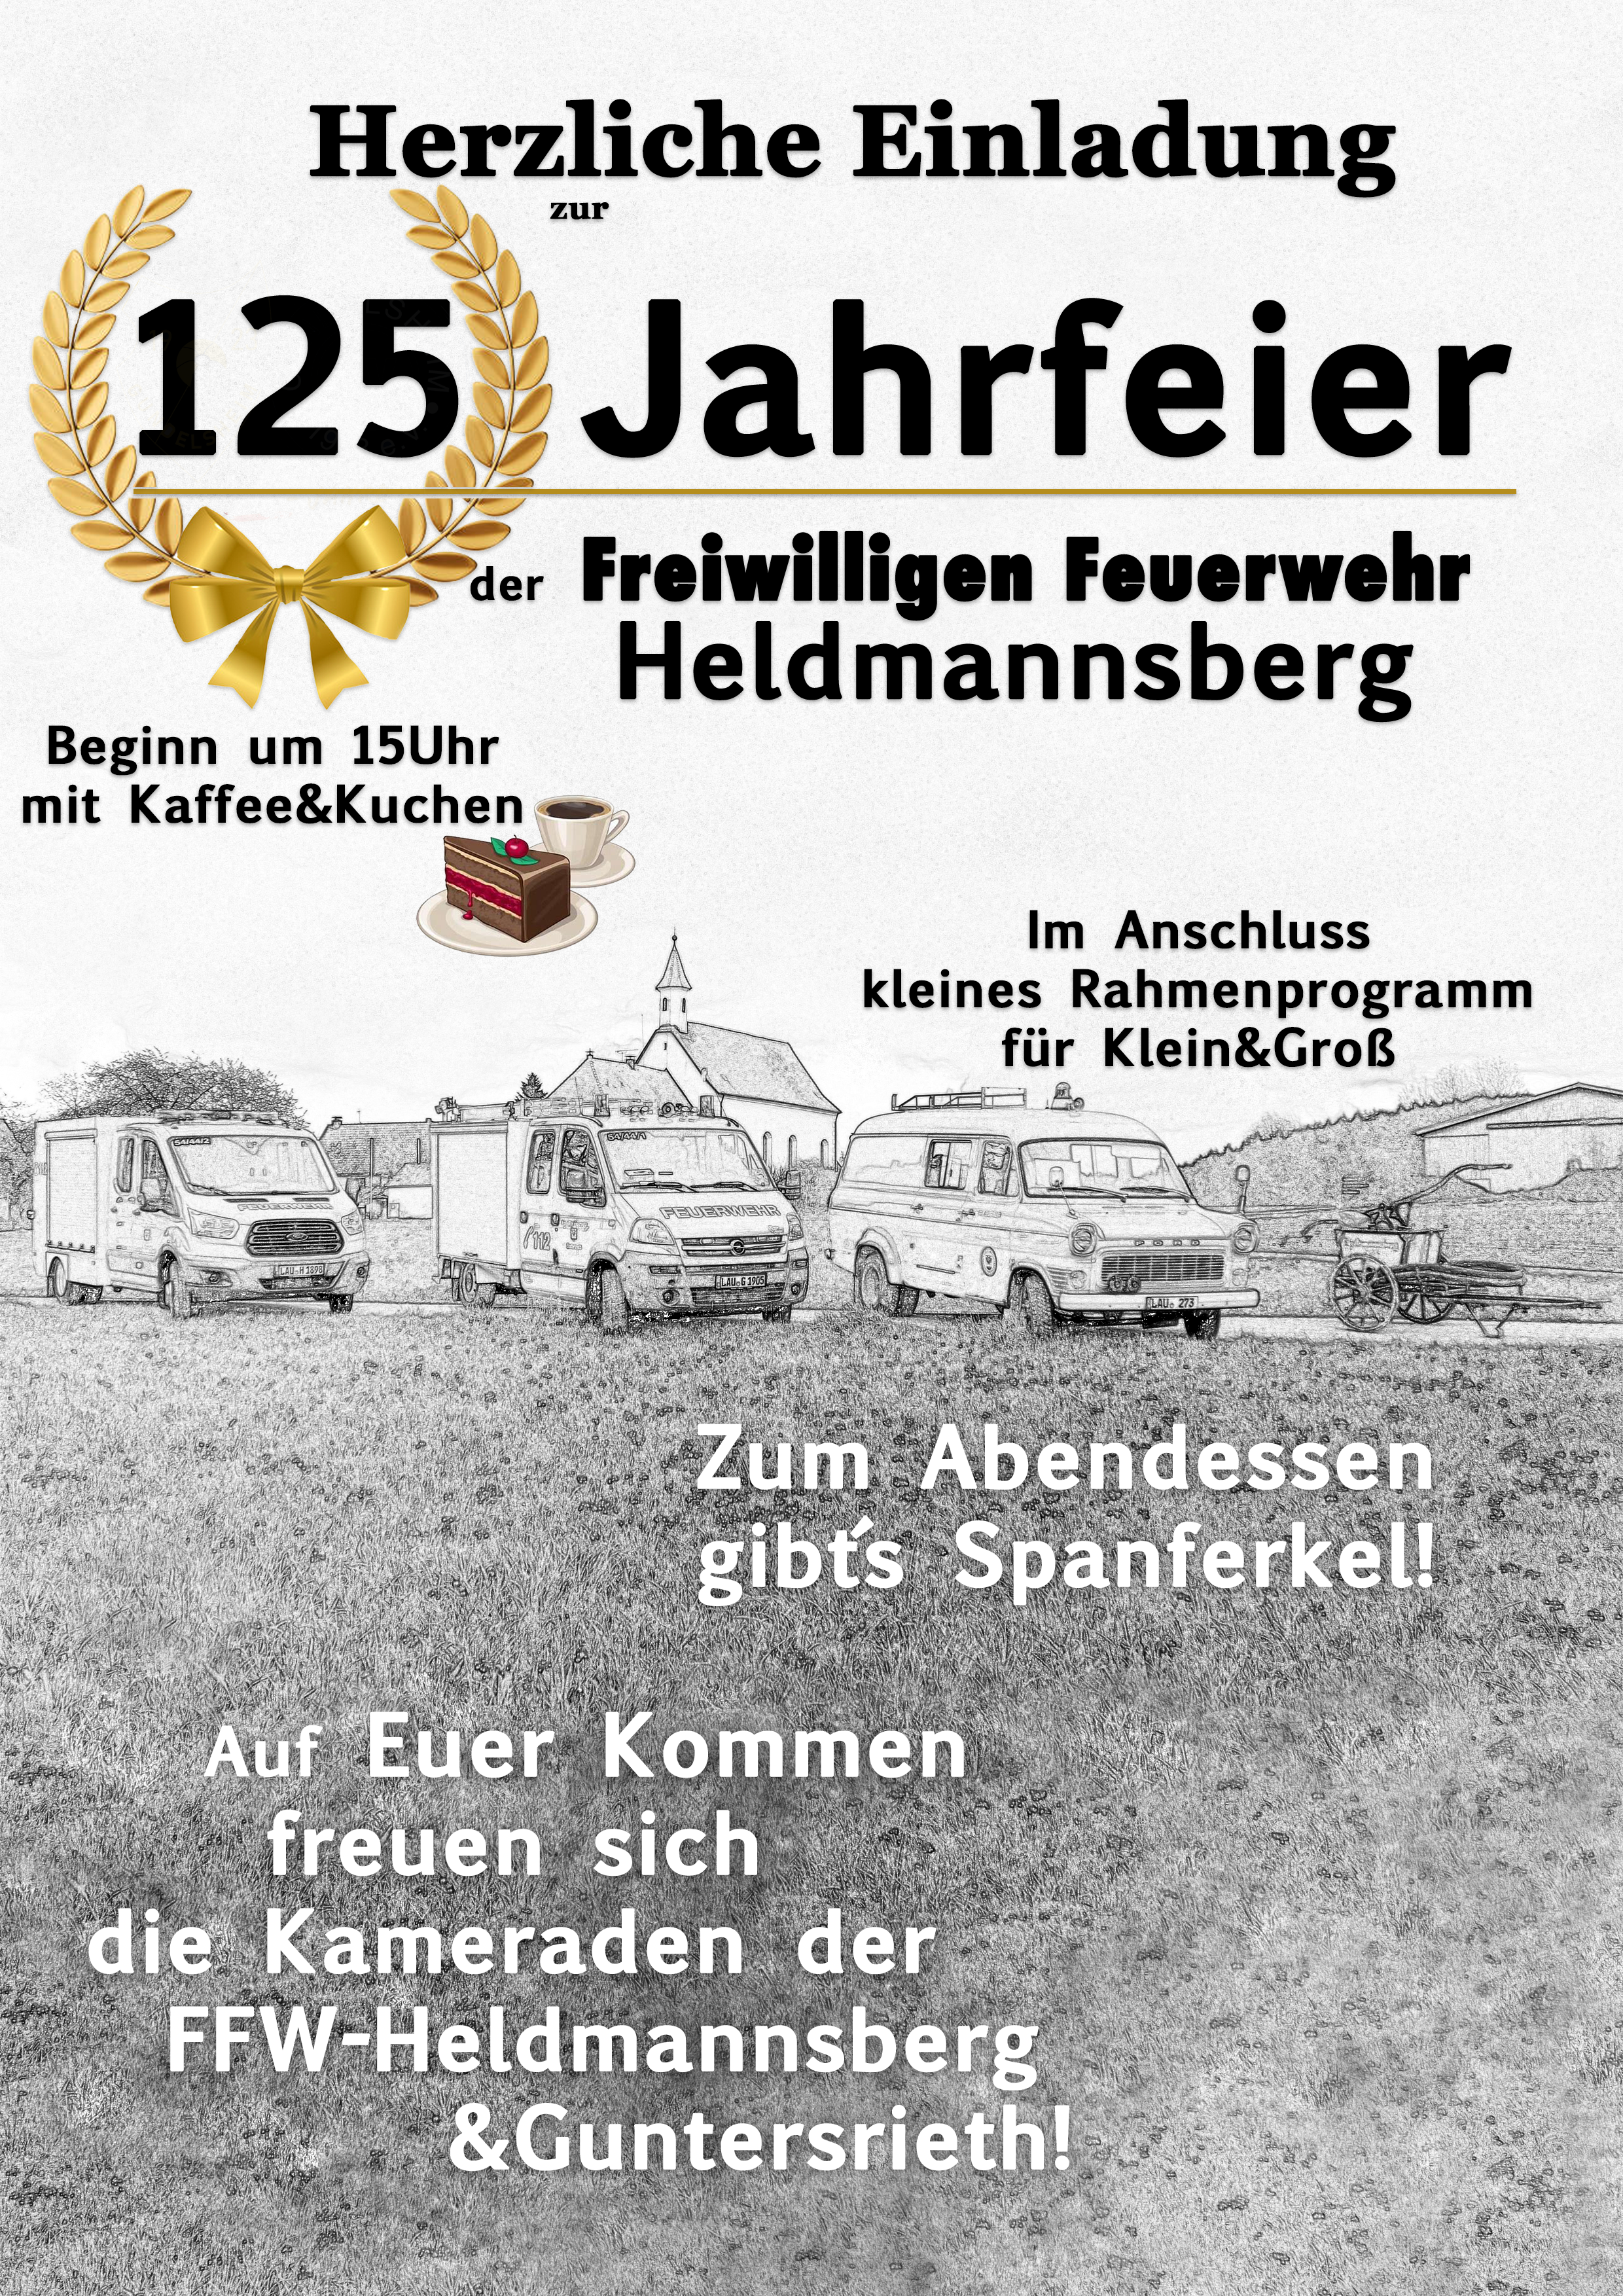 125 Jahrfeier Freiwillige Feuerwehr Heldmannsberg